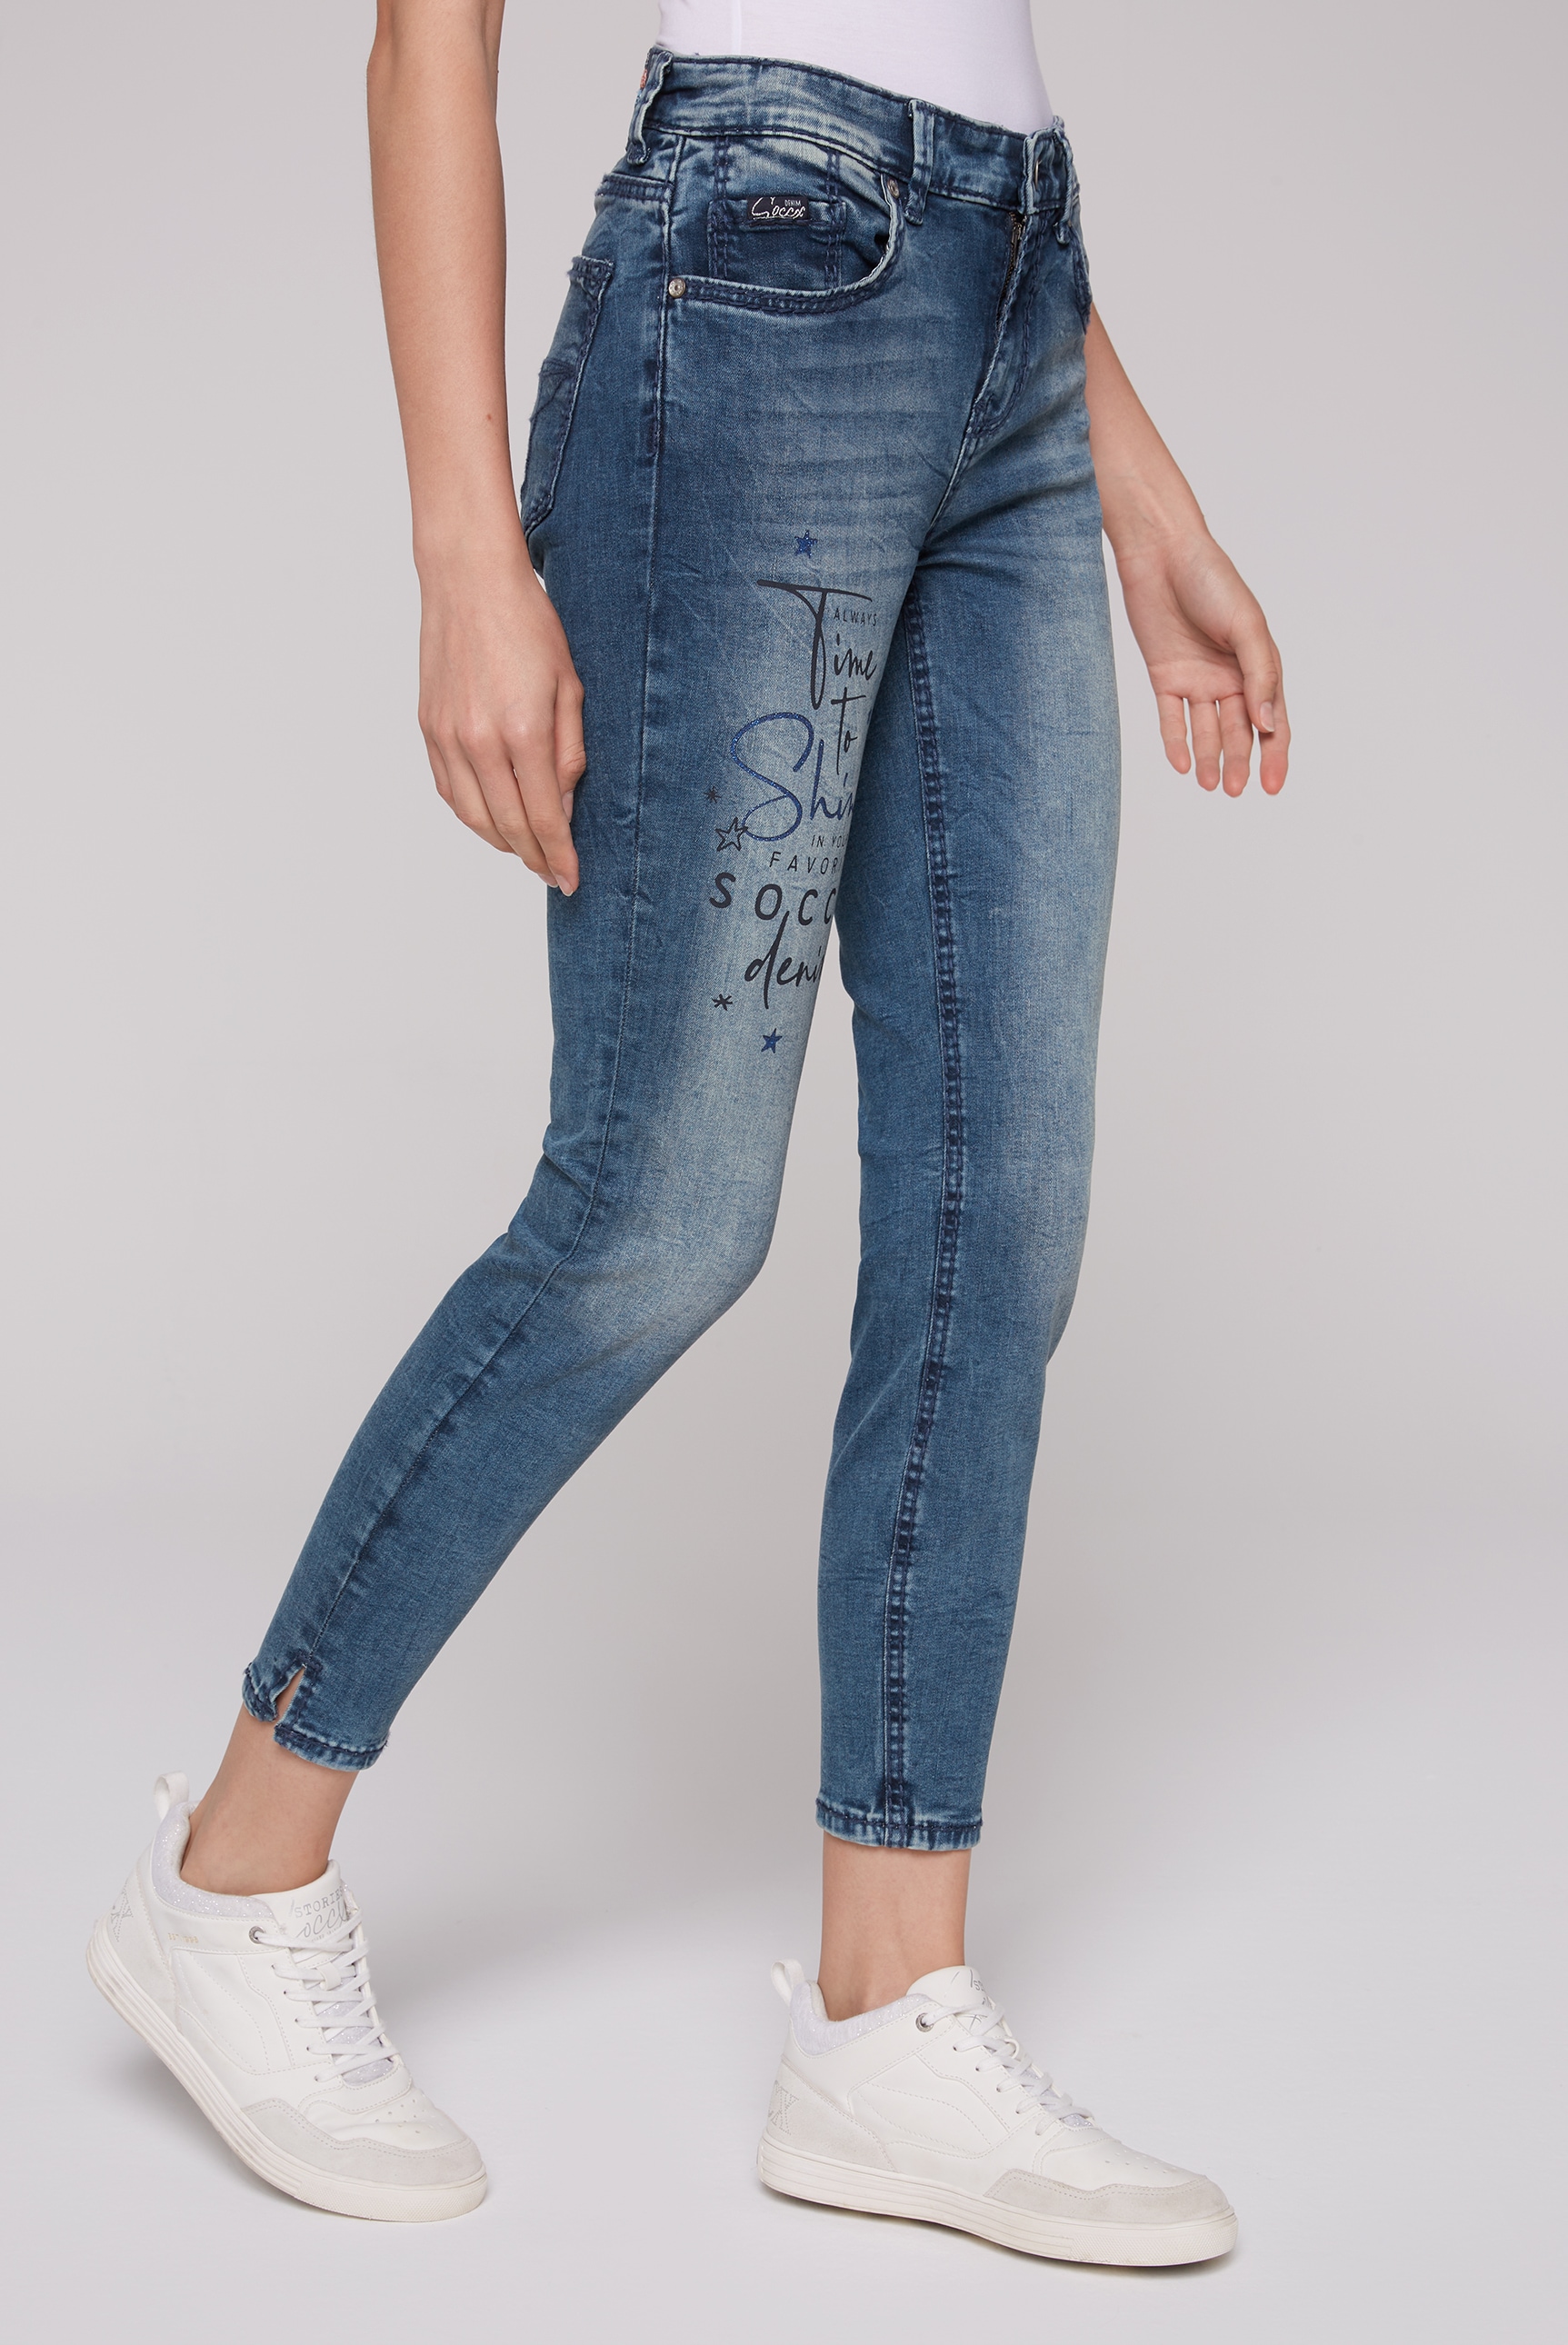 online Bein BAUR SOCCX verkürztem Slim-fit-Jeans, mit kaufen |